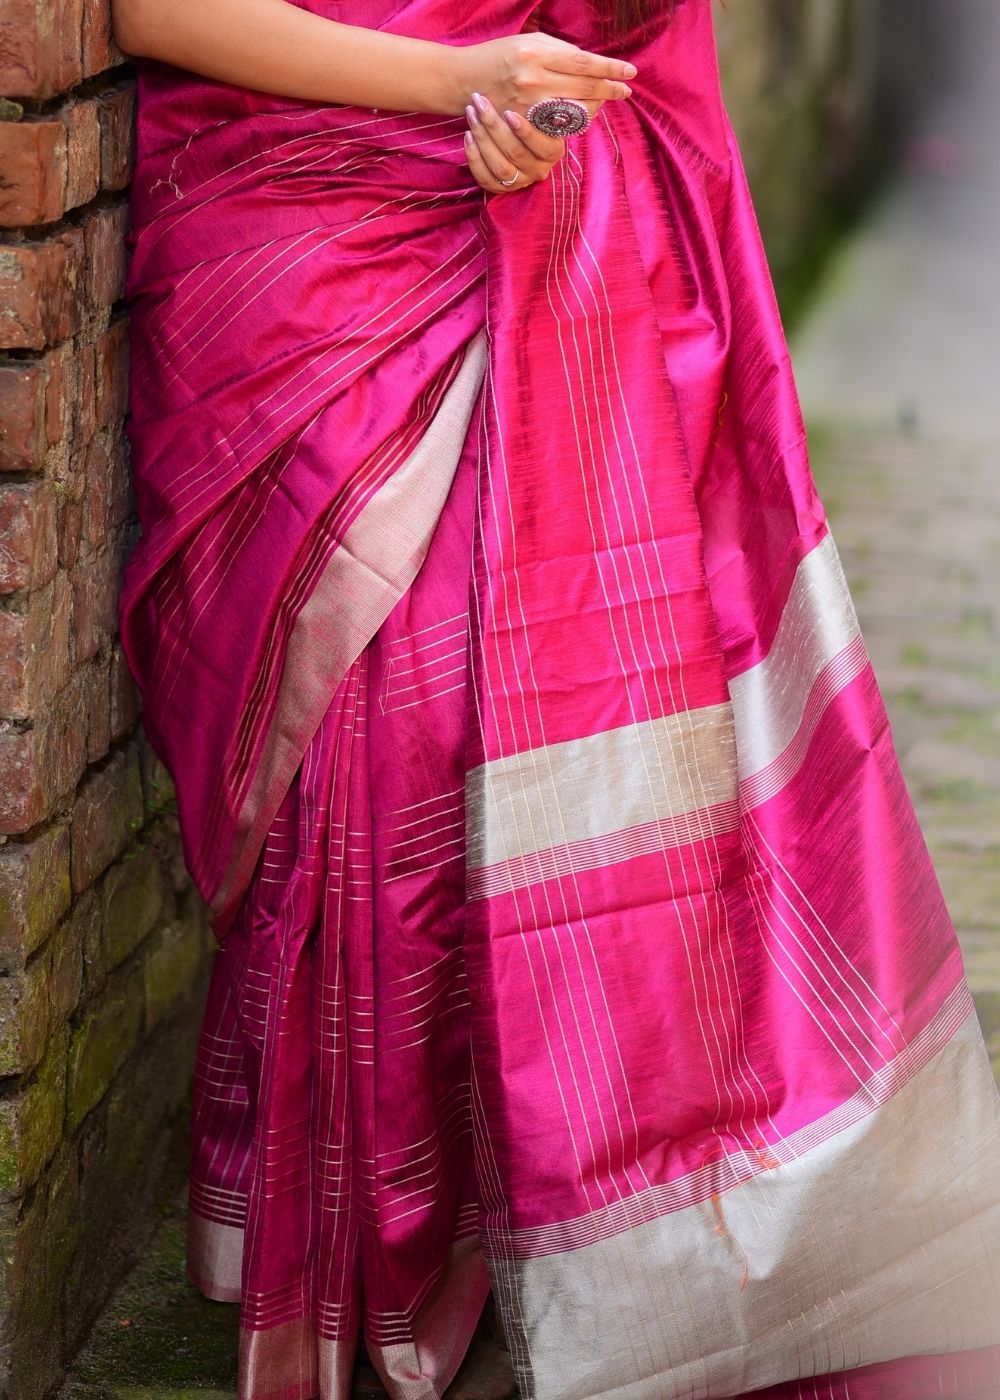 Hot Pink Designer Raw Silk Saree